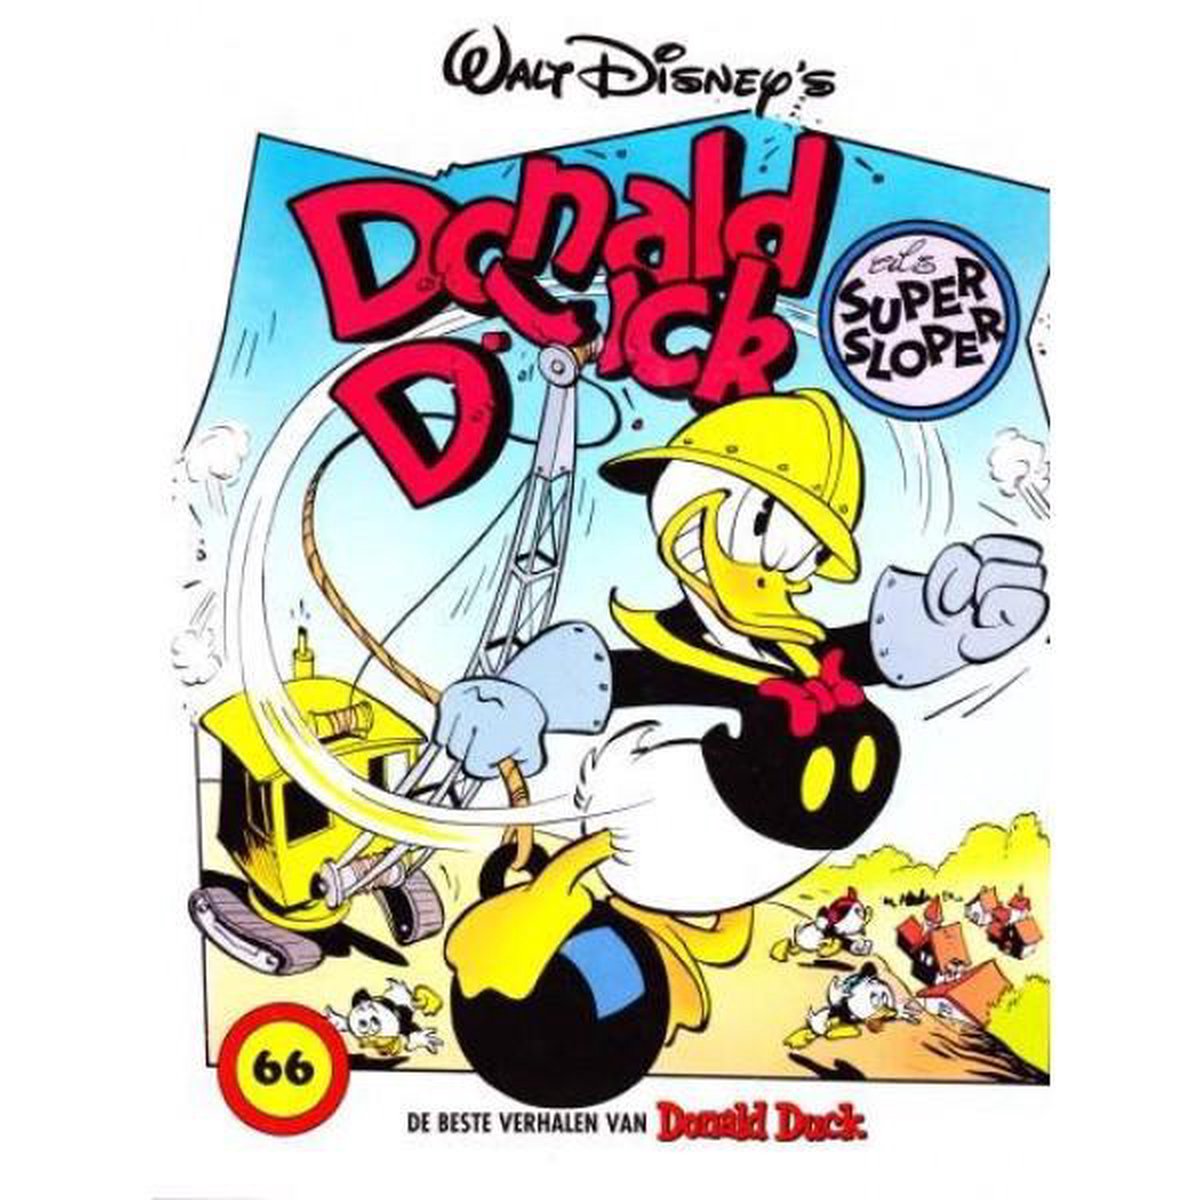 Donald Duck als supersloper / De beste verhalen van Donald Duck / 66